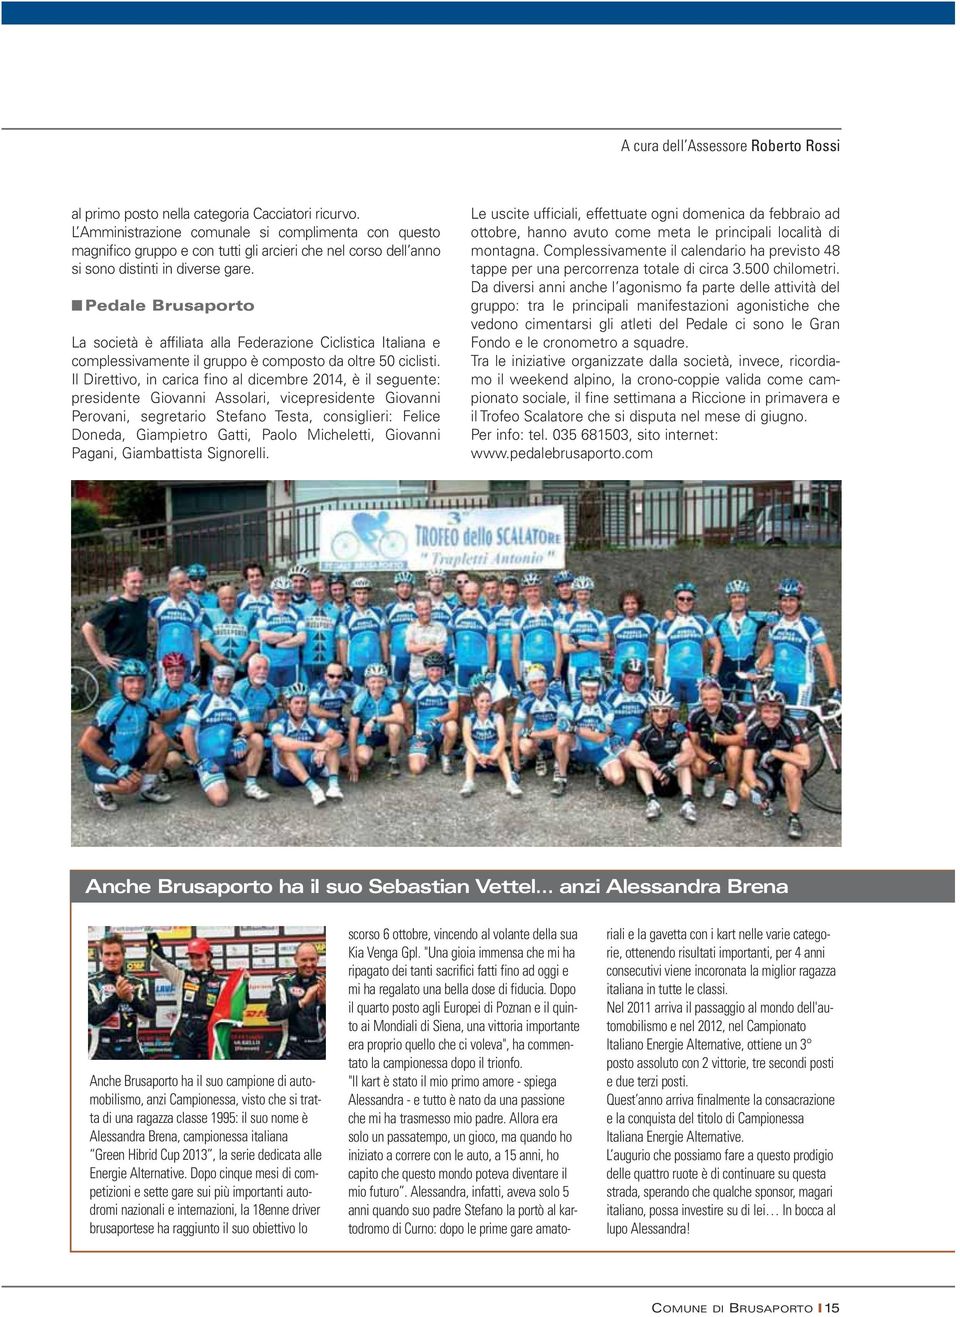 Pedale Brusaporto La società è affiliata alla Federazione Ciclistica Italiana e complessivamente il gruppo è composto da oltre 50 ciclisti.